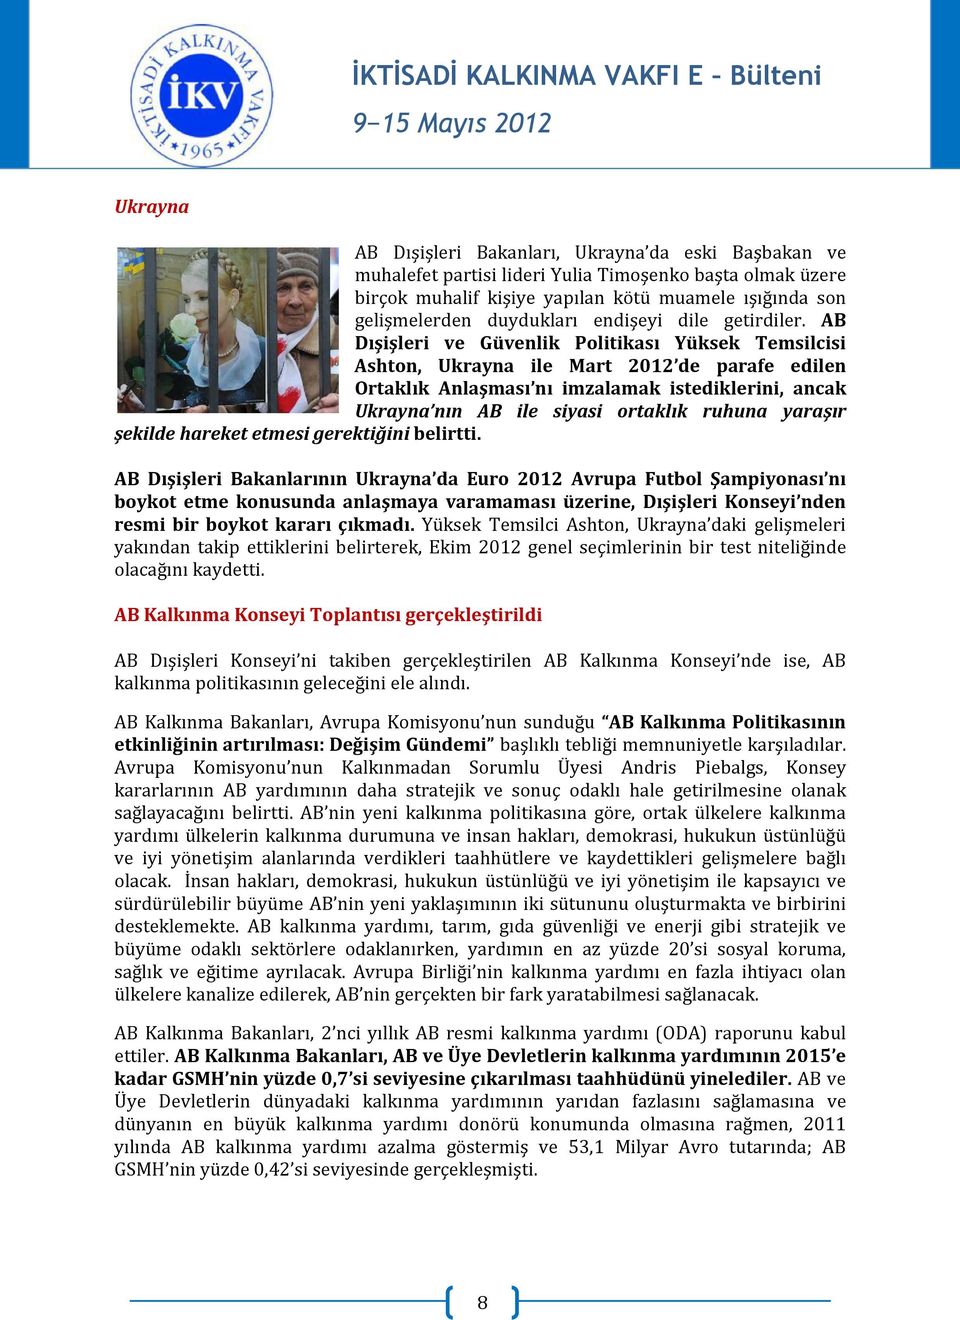 AB Dışişleri ve Güvenlik Politikası Yüksek Temsilcisi Ashton, Ukrayna ile Mart 2012 de parafe edilen Ortaklık Anlaşması nı imzalamak istediklerini, ancak Ukrayna nın AB ile siyasi ortaklık ruhuna